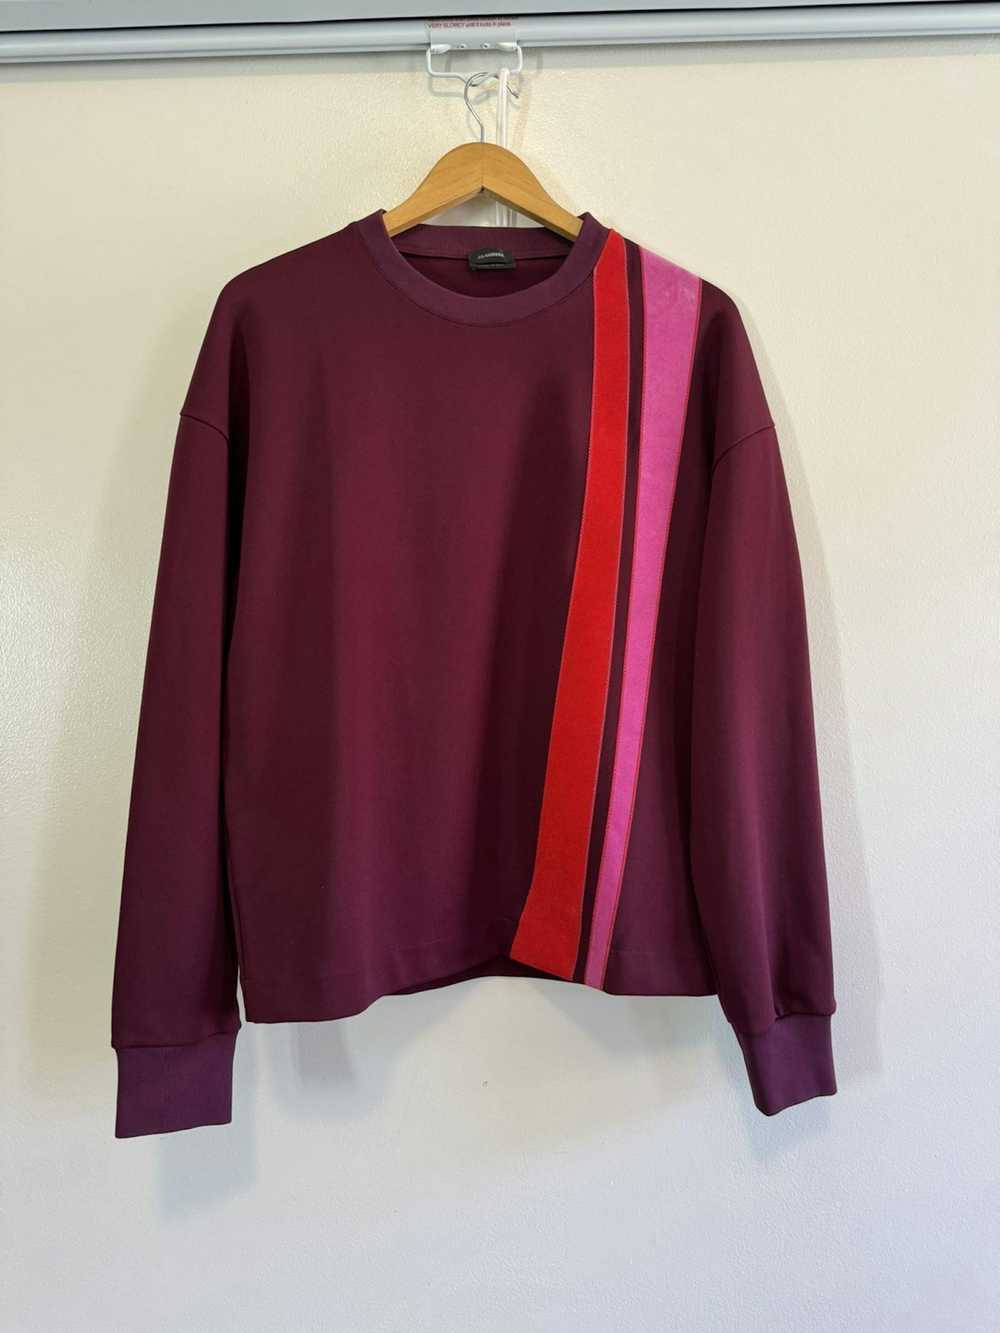 Jil Sander Jil Sander maroon burgundy sweatshirt … - image 2